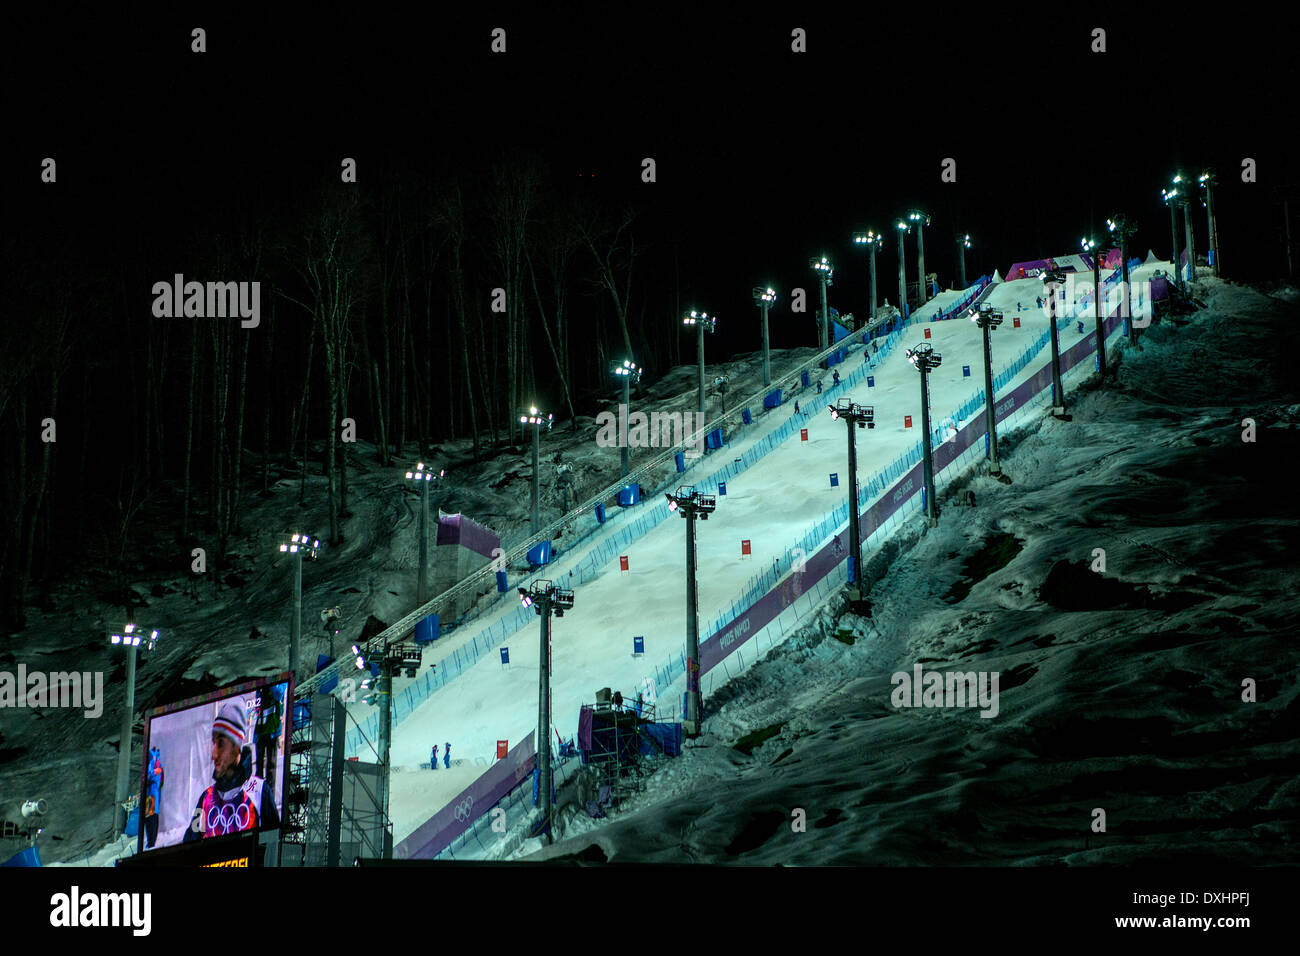 Veranstaltungsort für Freestyle-Ski Buckelpisten-Wettbewerb bei den Olympischen Winterspiele Sotschi 2014 Stockfoto